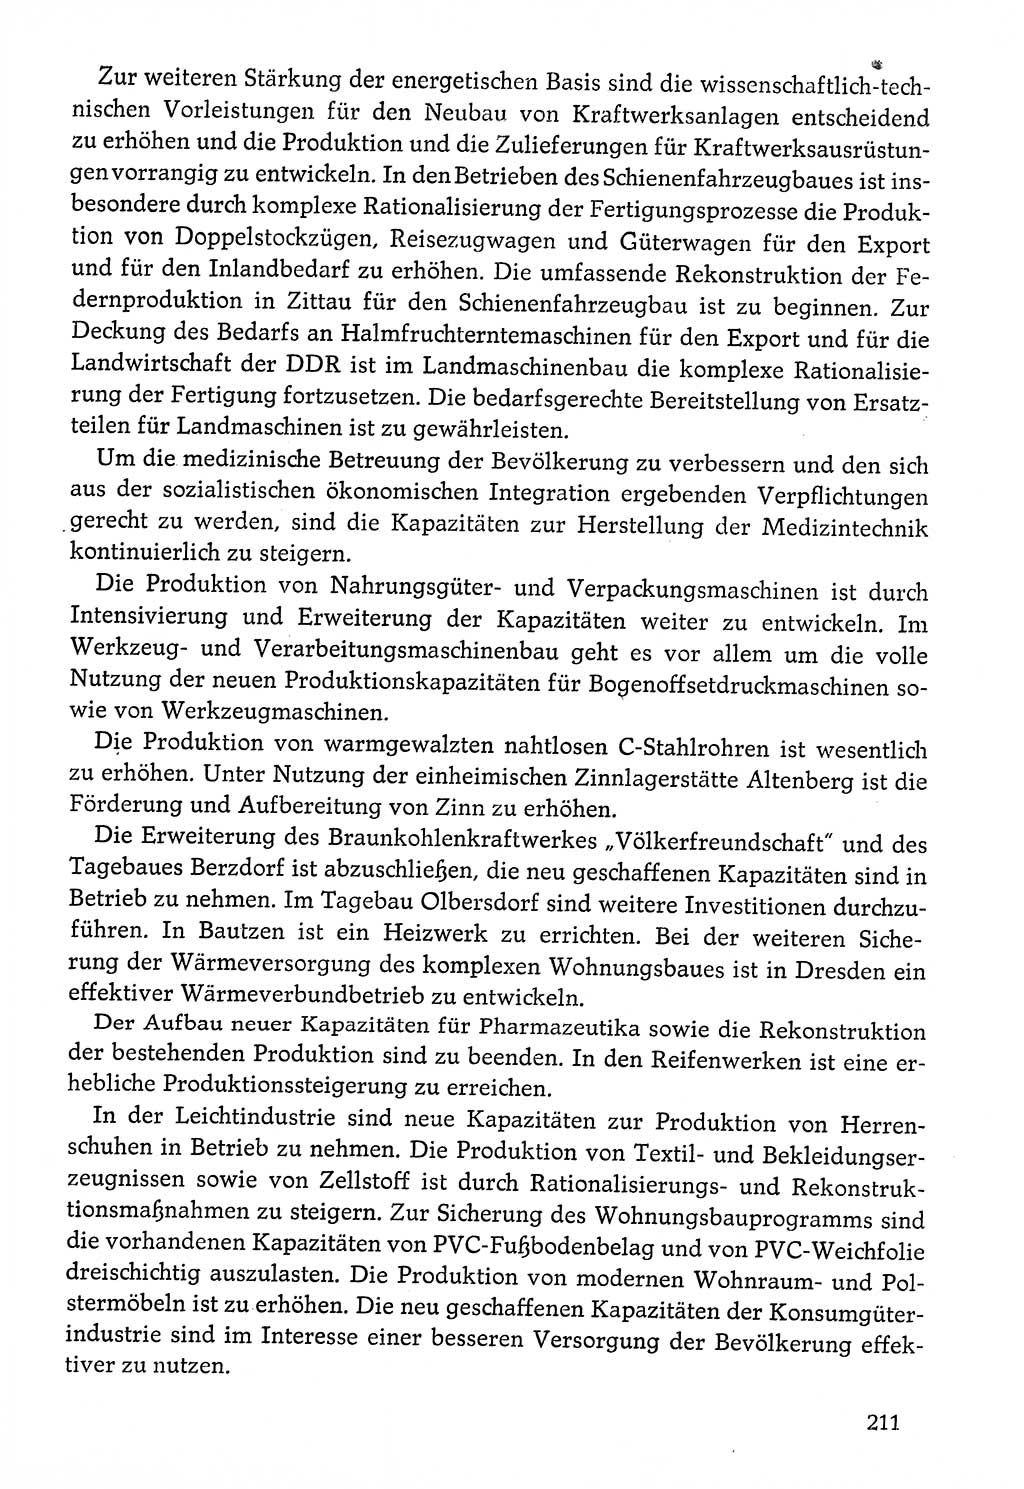 Dokumente der Sozialistischen Einheitspartei Deutschlands (SED) [Deutsche Demokratische Republik (DDR)] 1976-1977, Seite 211 (Dok. SED DDR 1976-1977, S. 211)